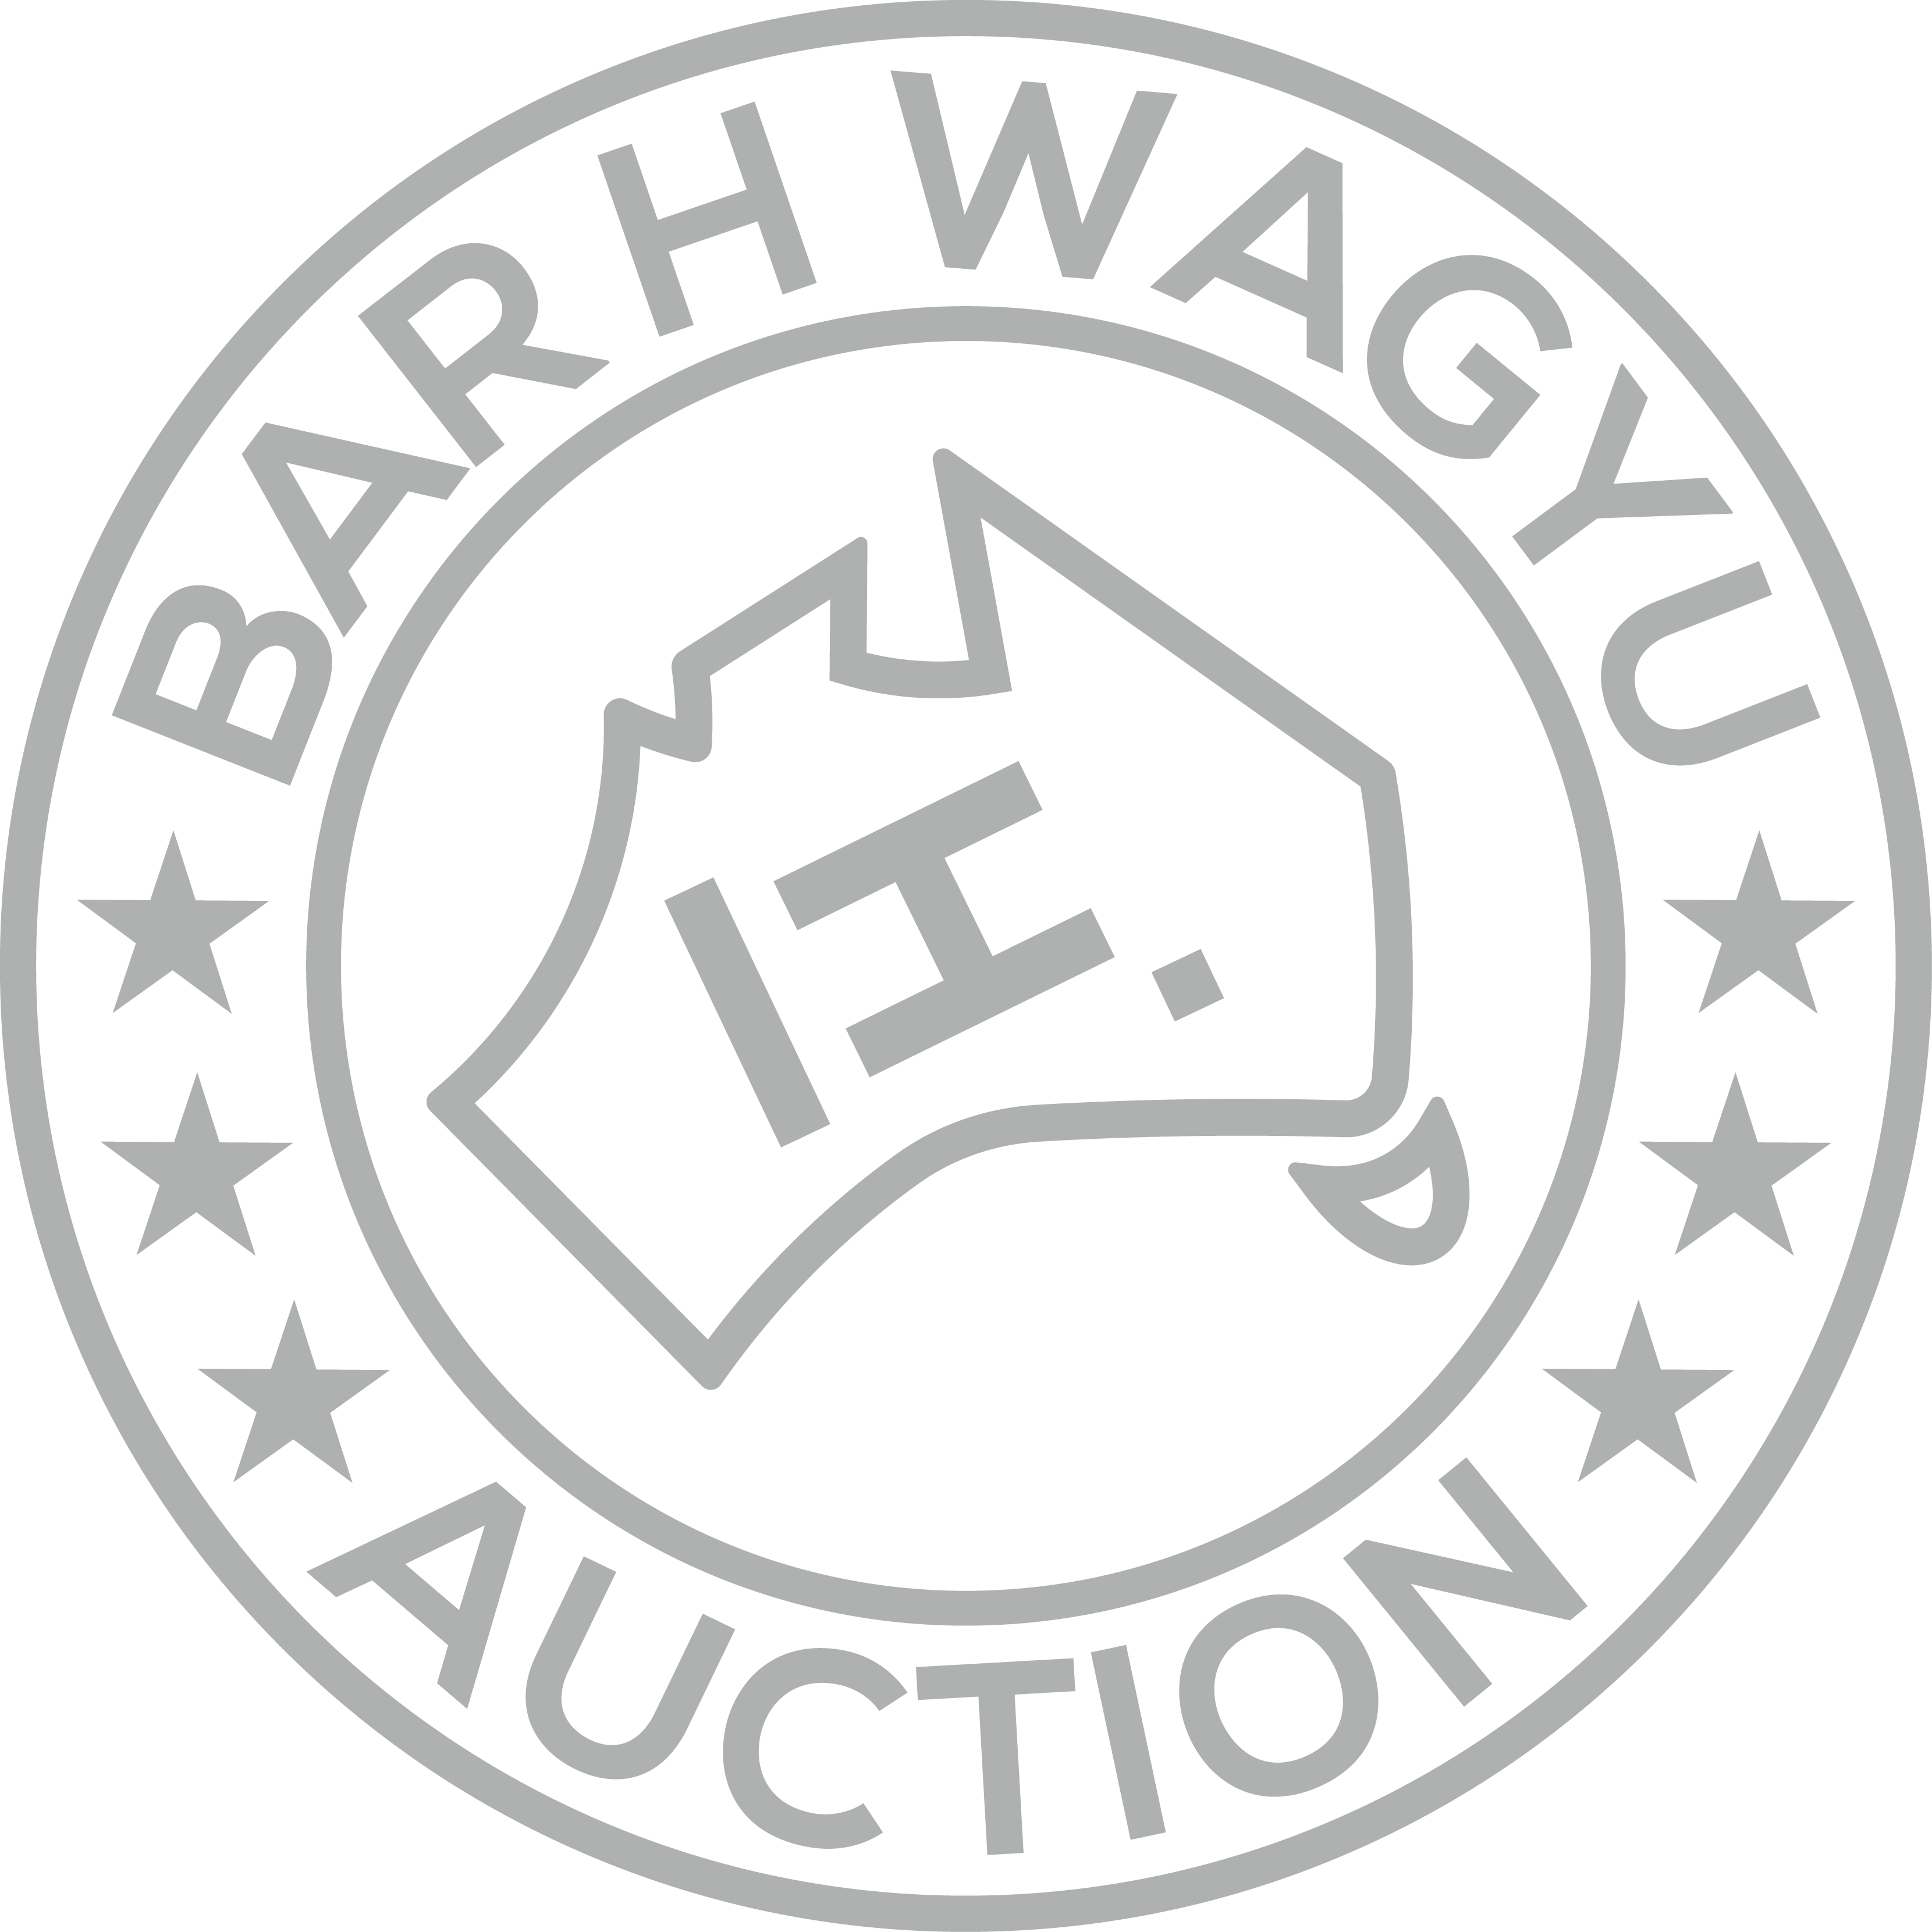 BAR H WAGYU AUCTION